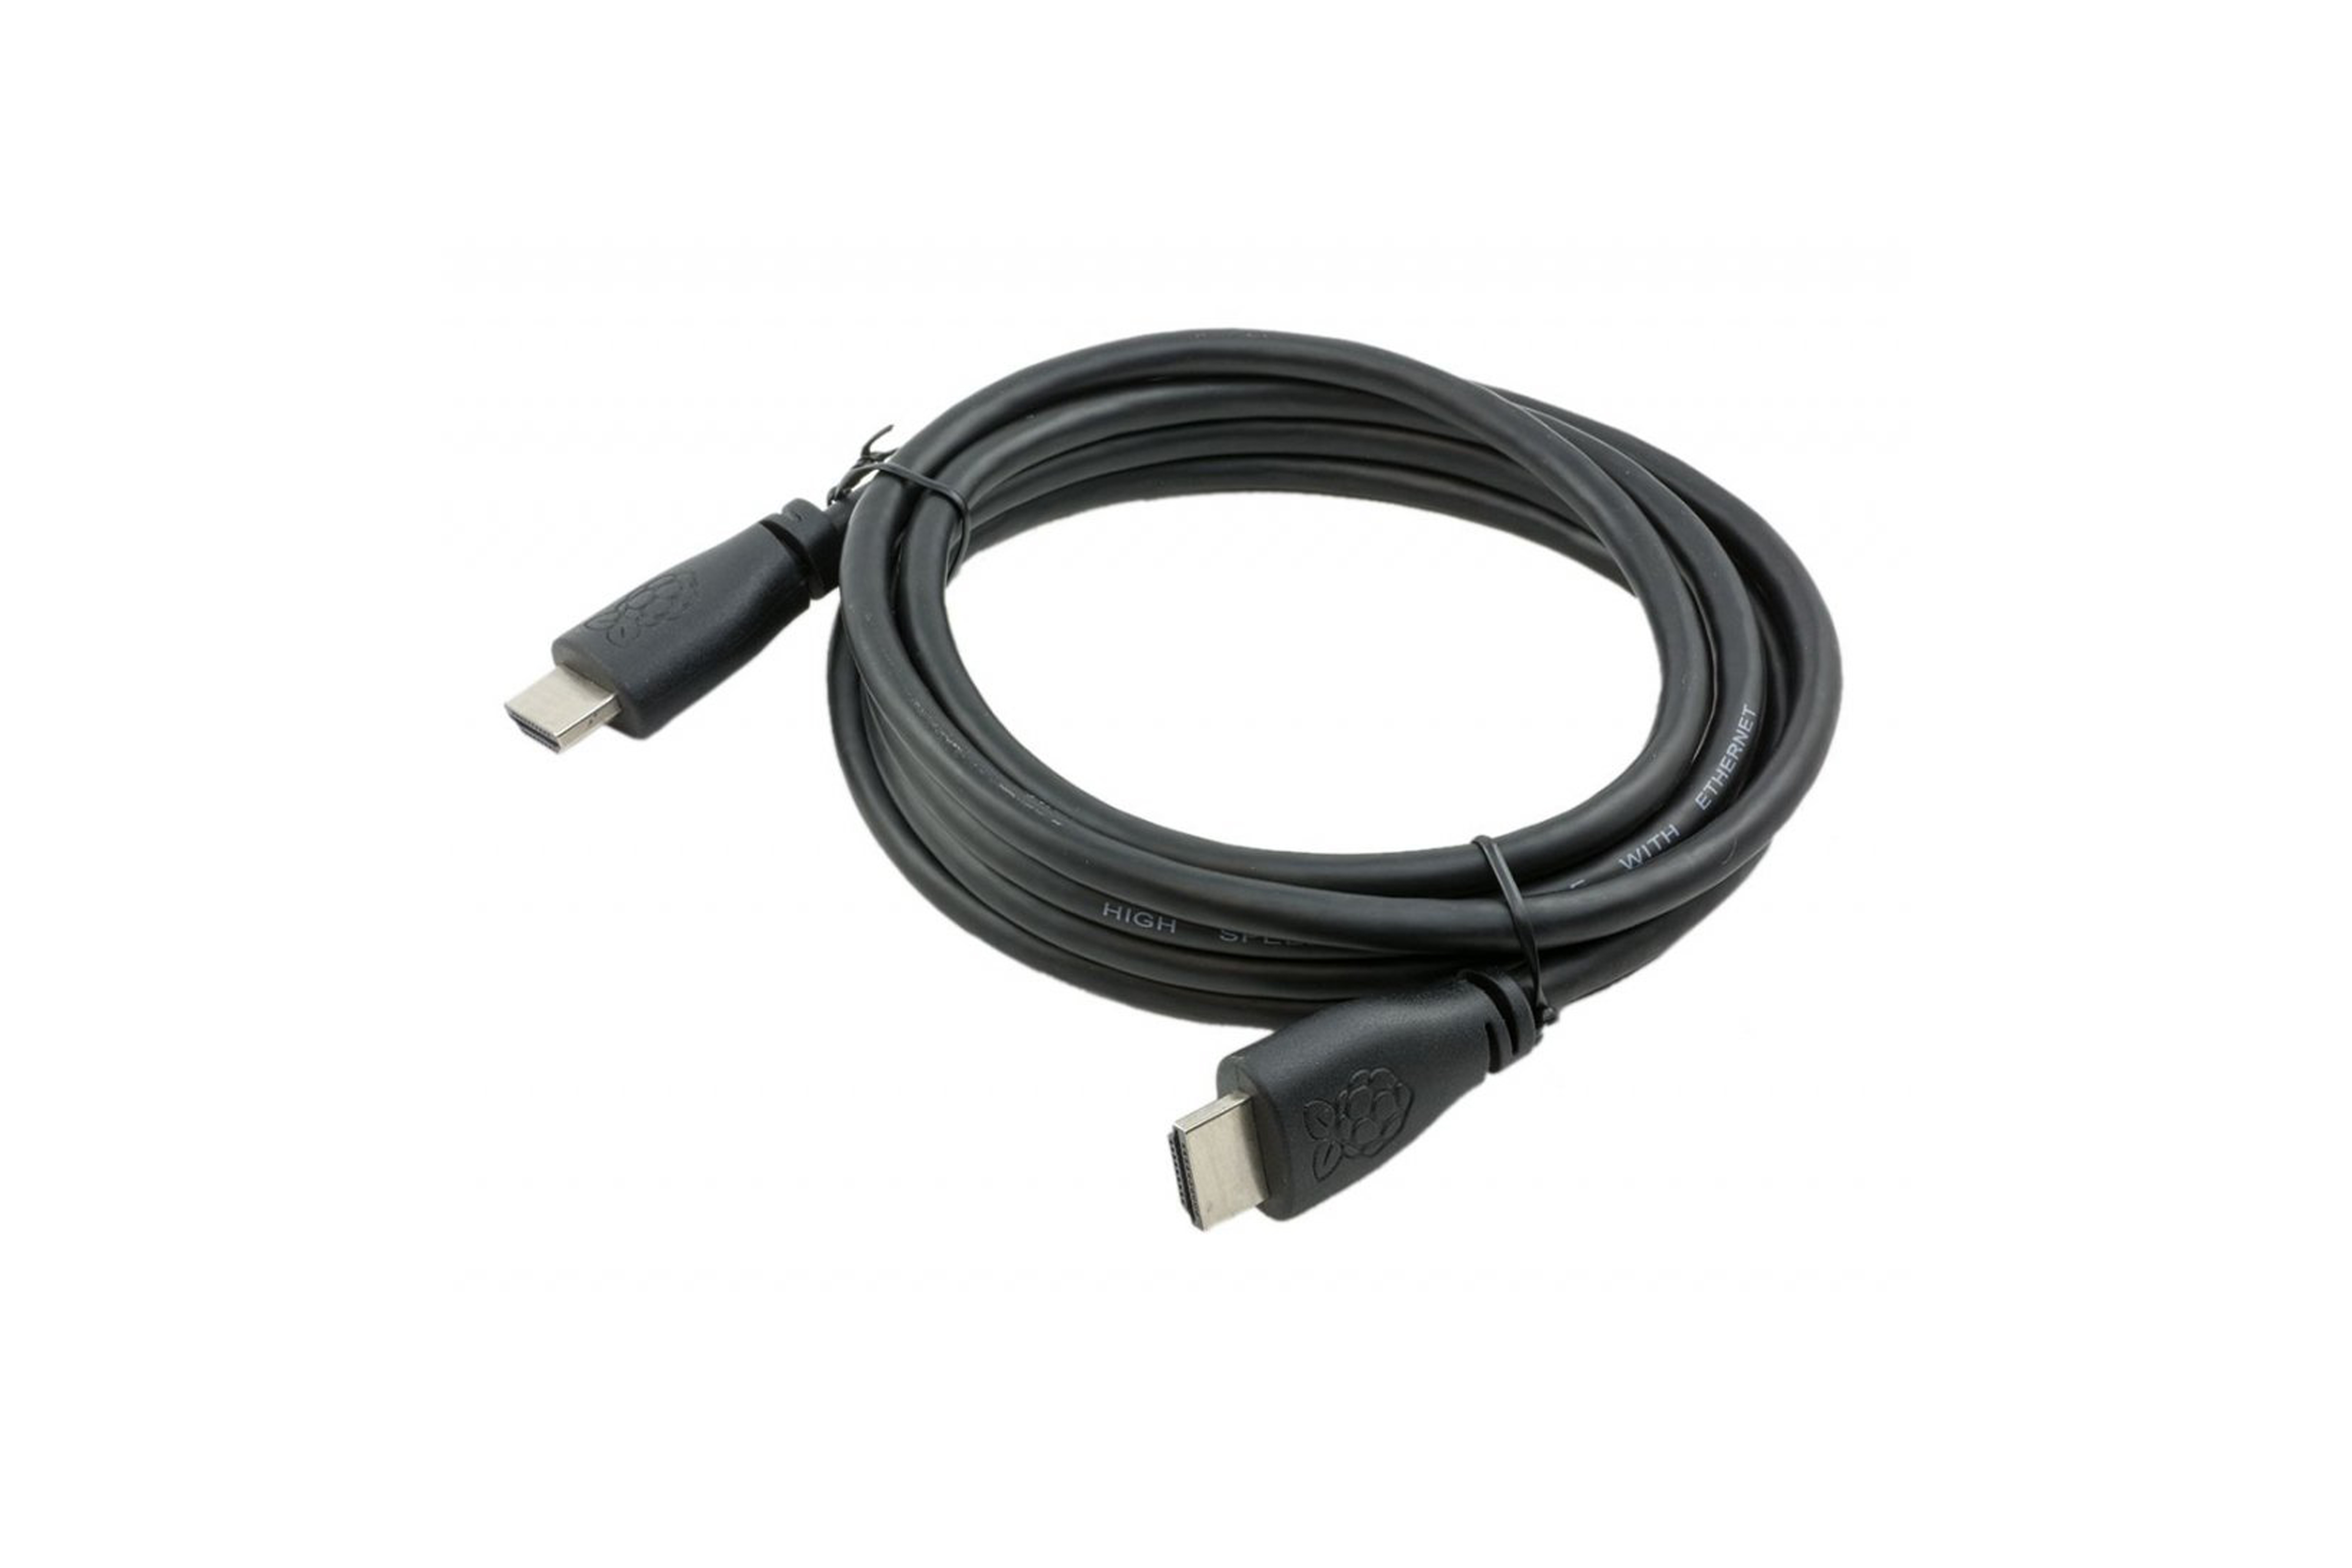 Offizielles HDMI-Kabel für Raspberry Pi, 2 m, schwarz